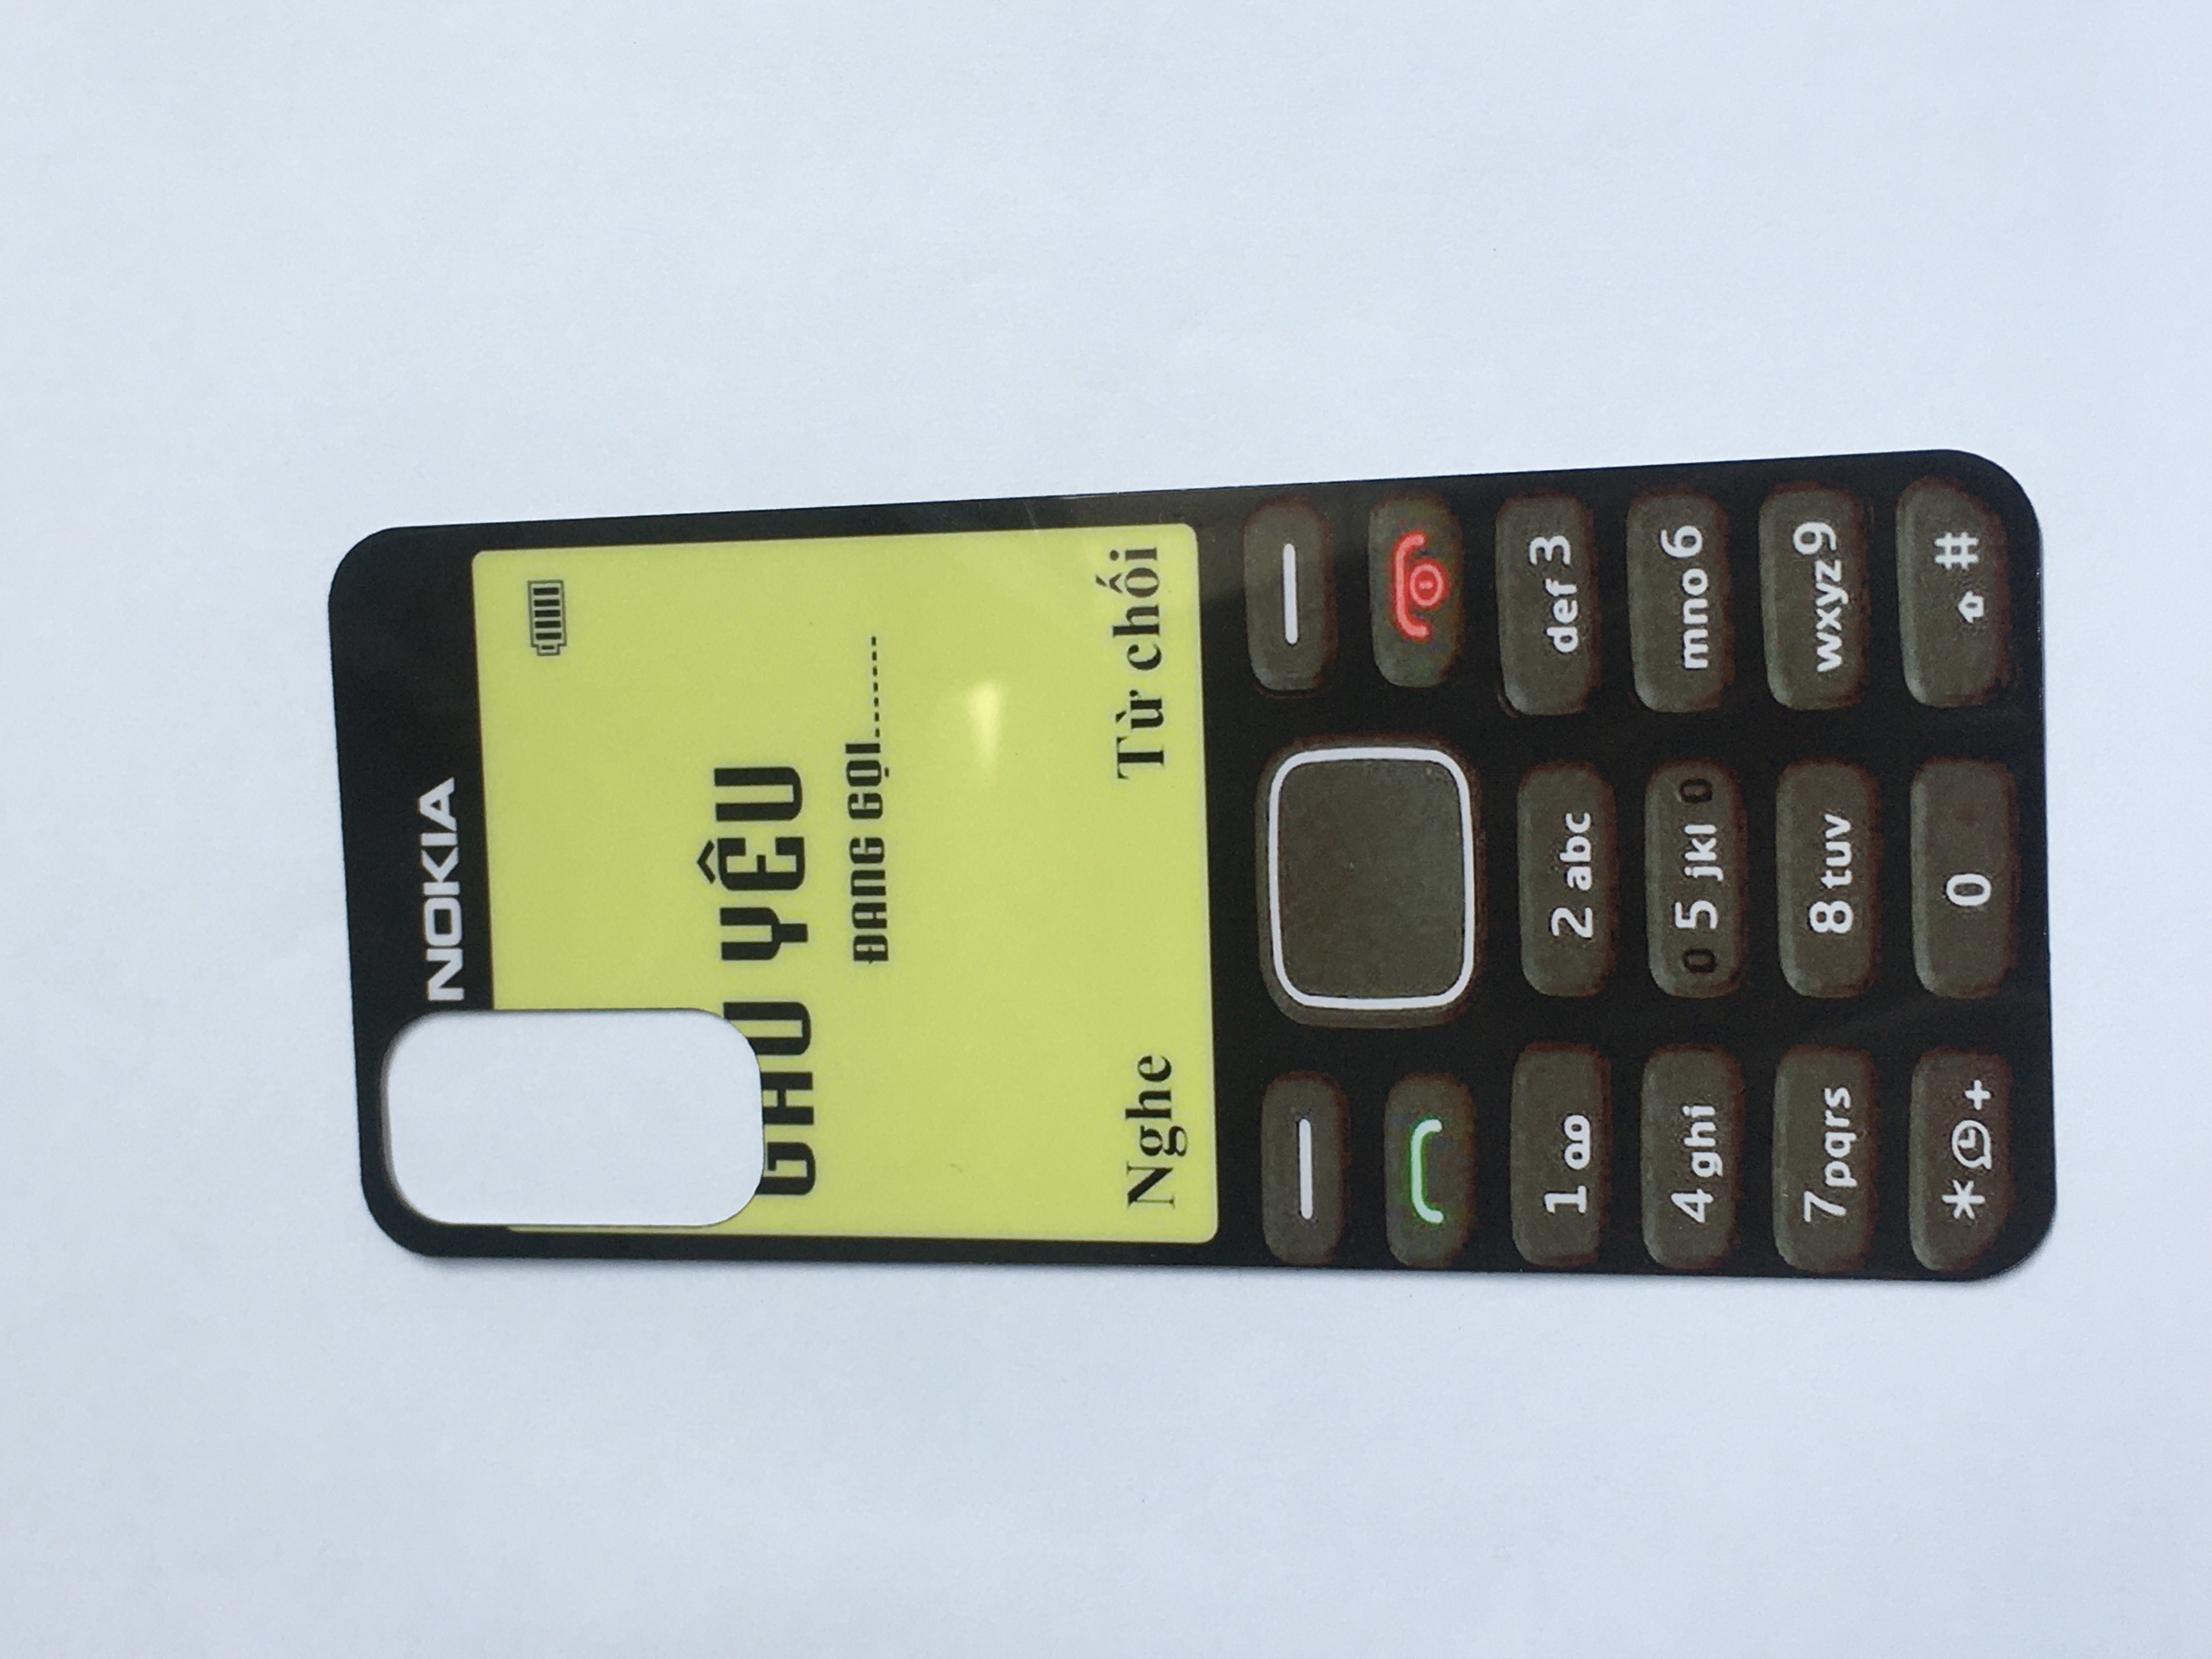 Laden Sie die Leser ein, das Nokia 1280 Wallpaper-Set für Android und iPhone herunterzuladen